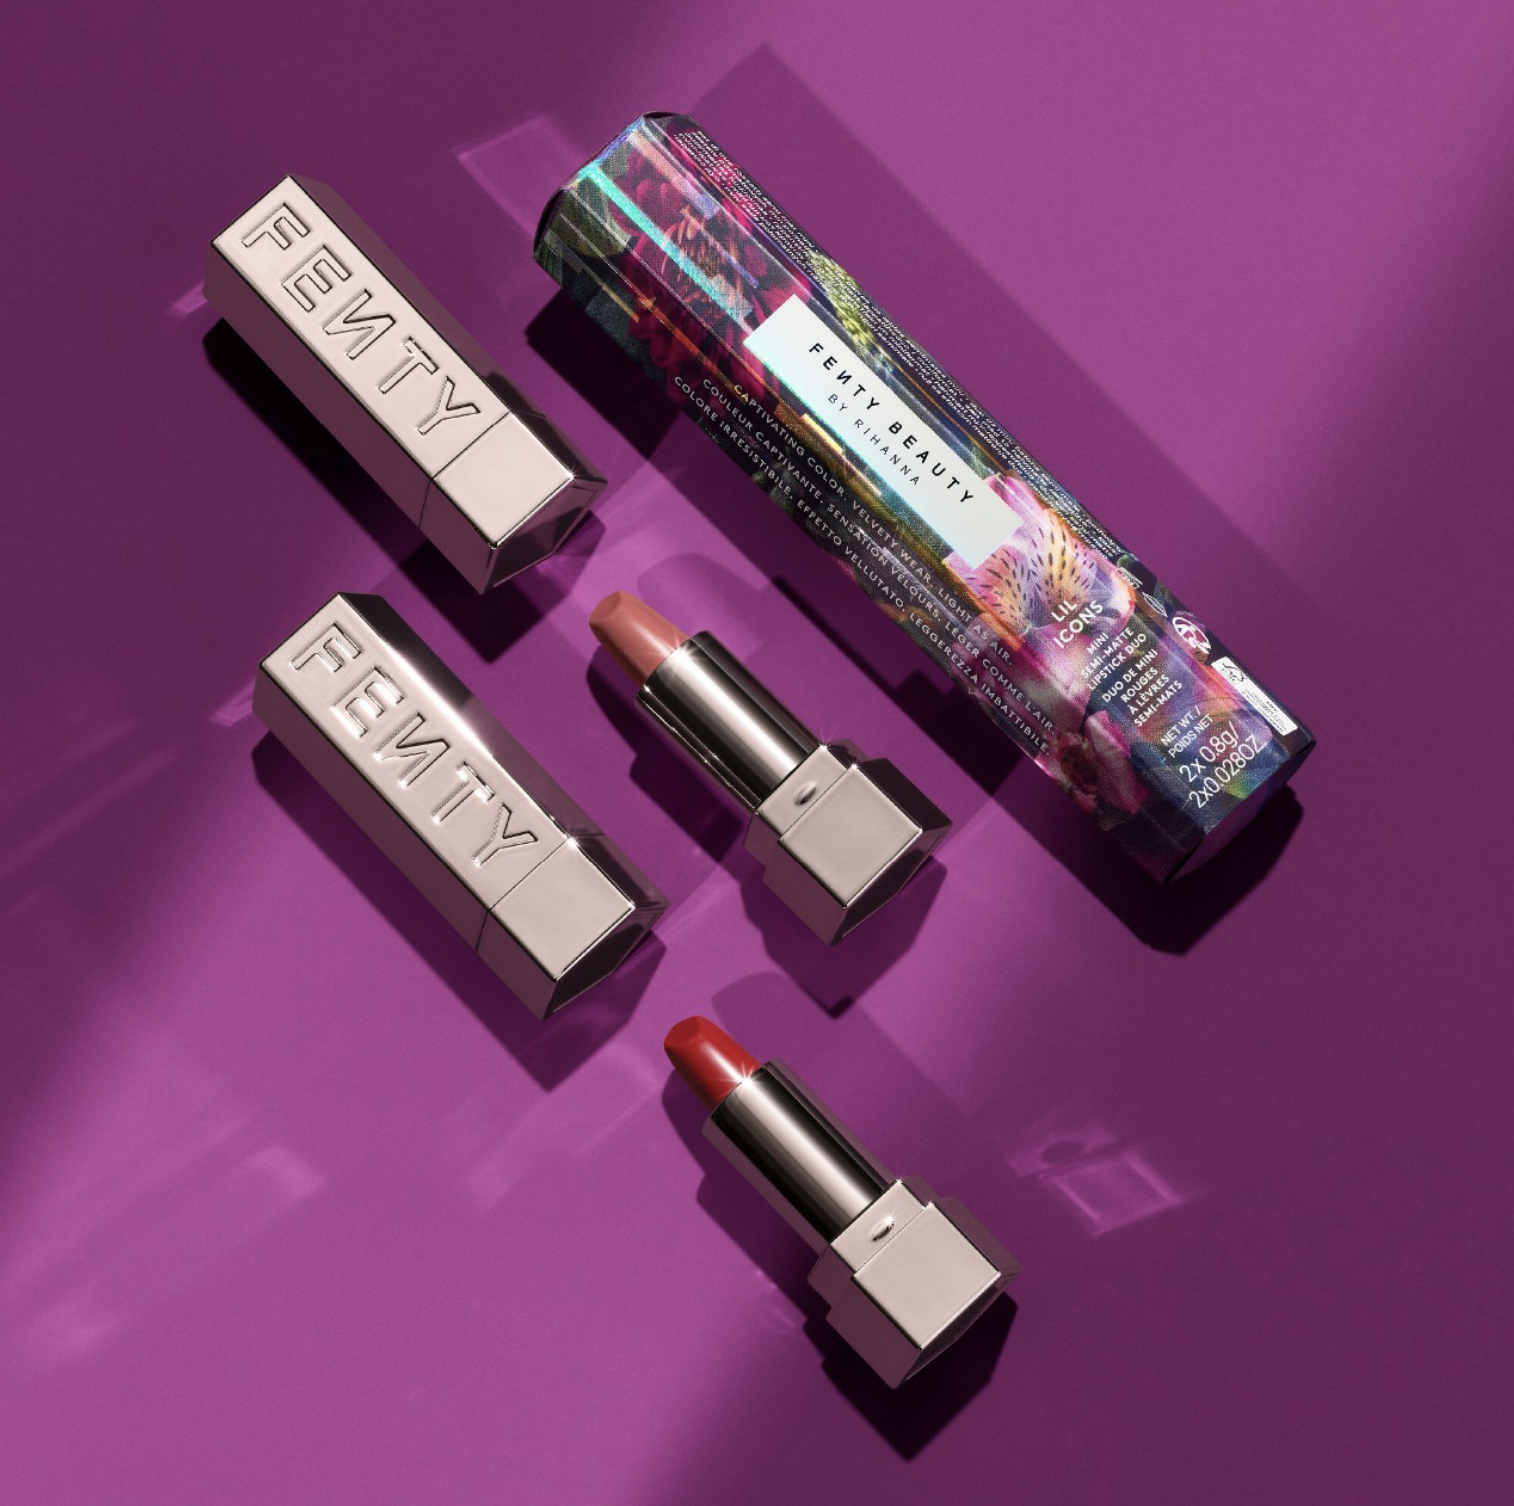 The two lipsticks next to their box